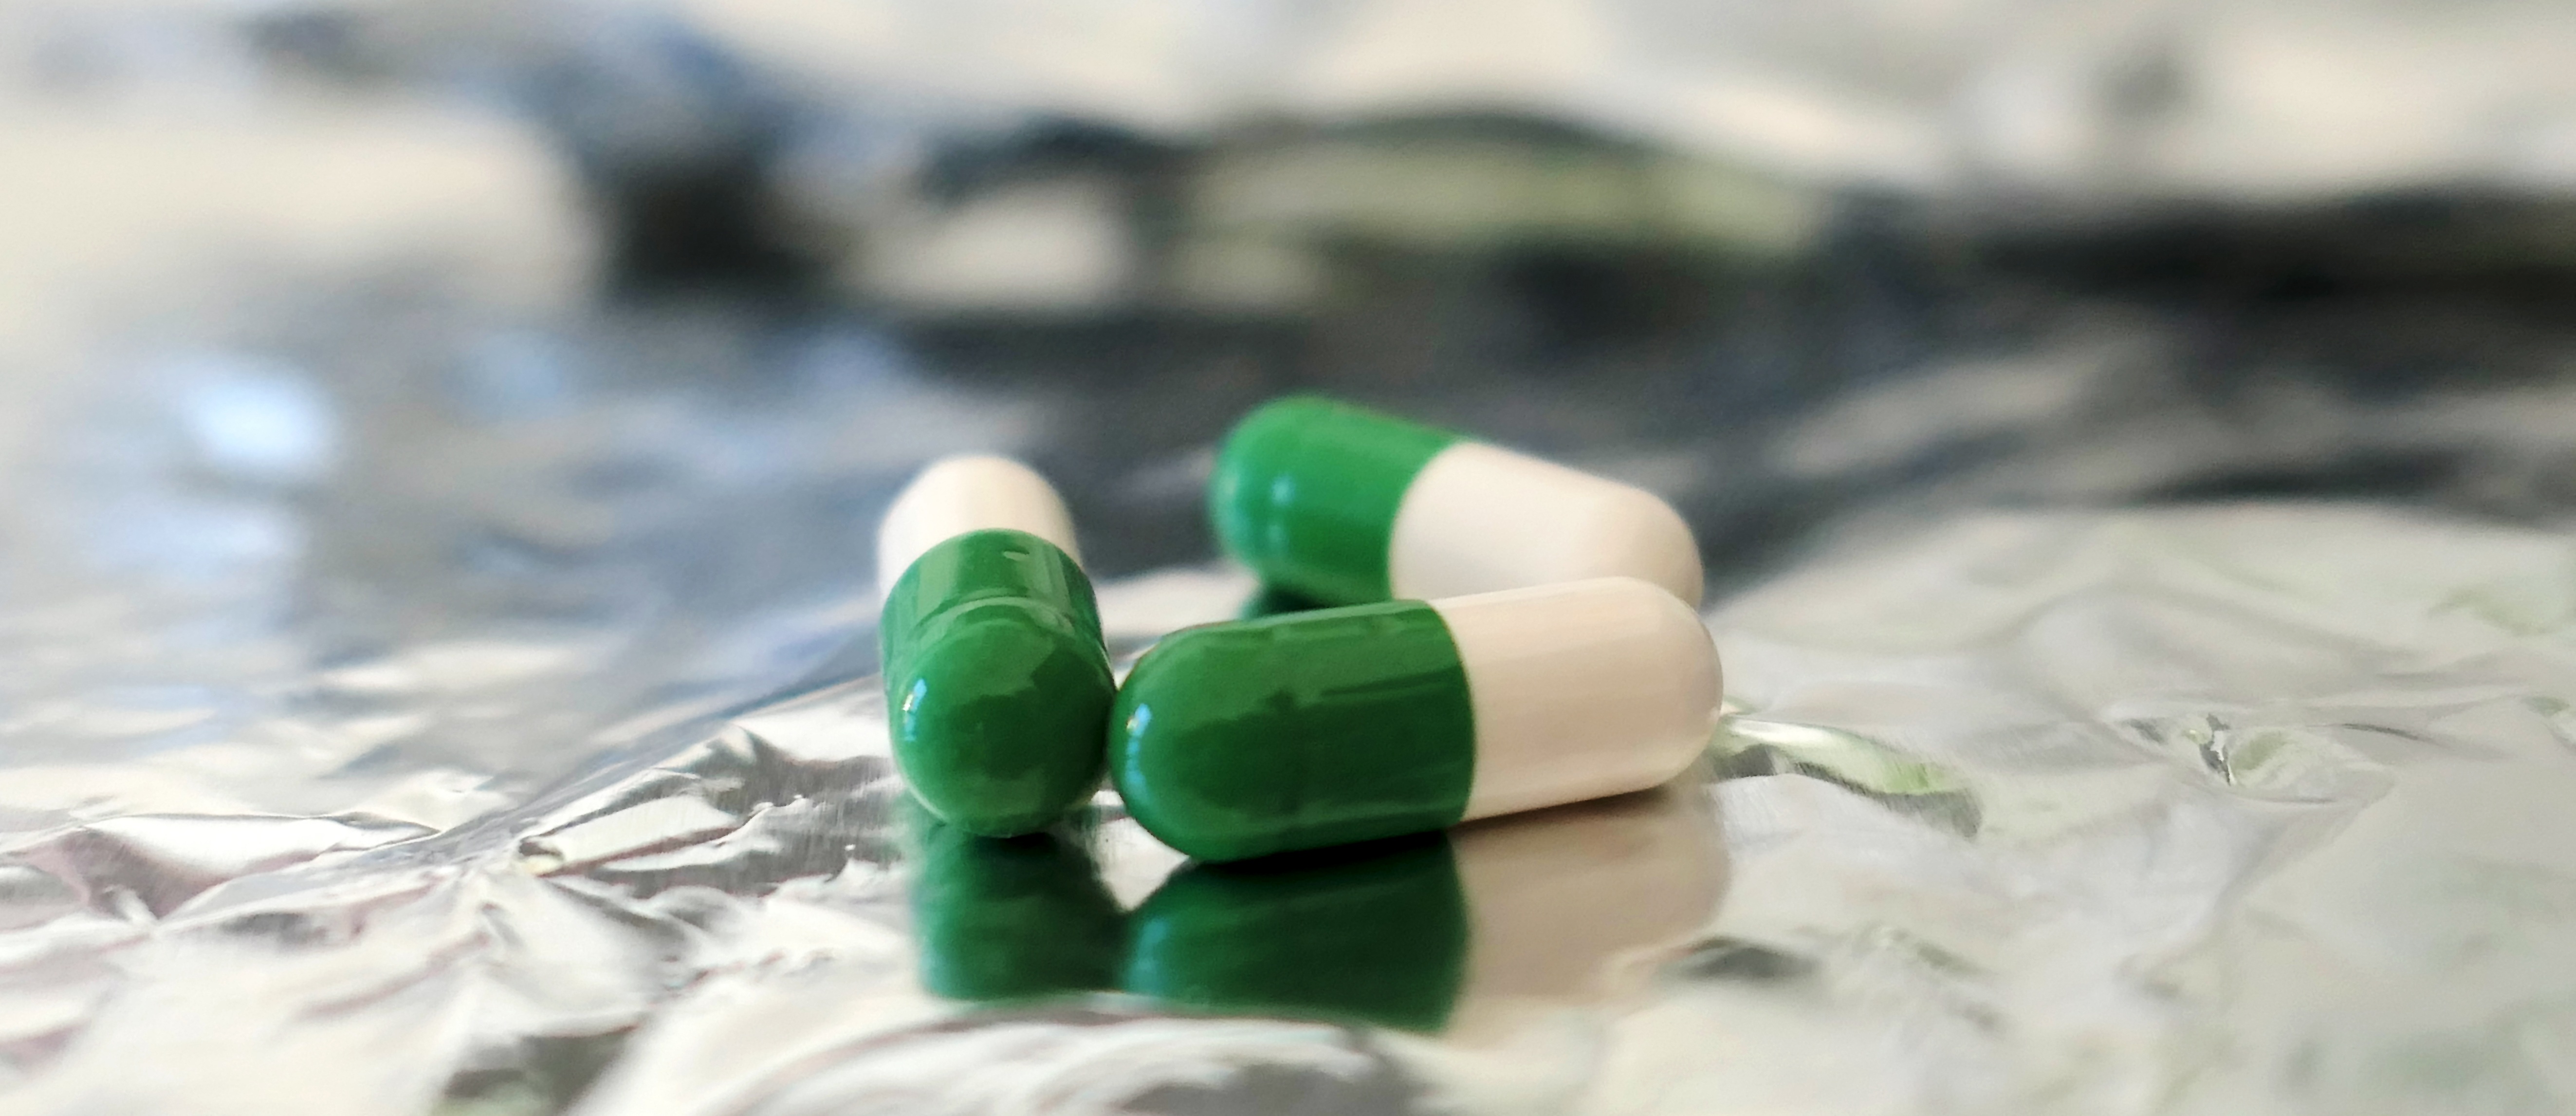 Zahnverfärbung durch Medikamente wie Antibiotika